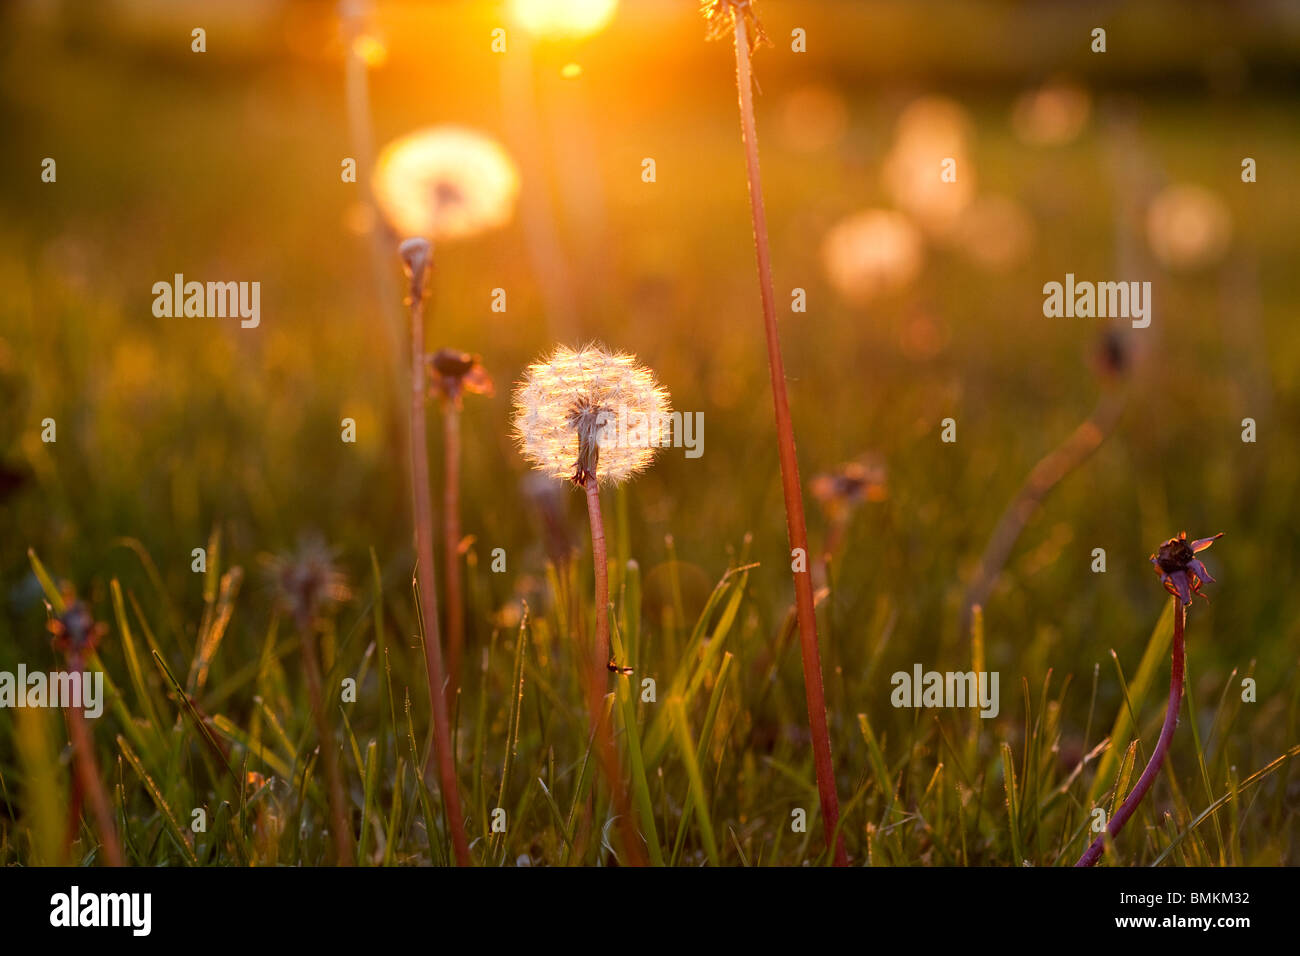 Dandelion seedheads poussant dans un champ Banque D'Images